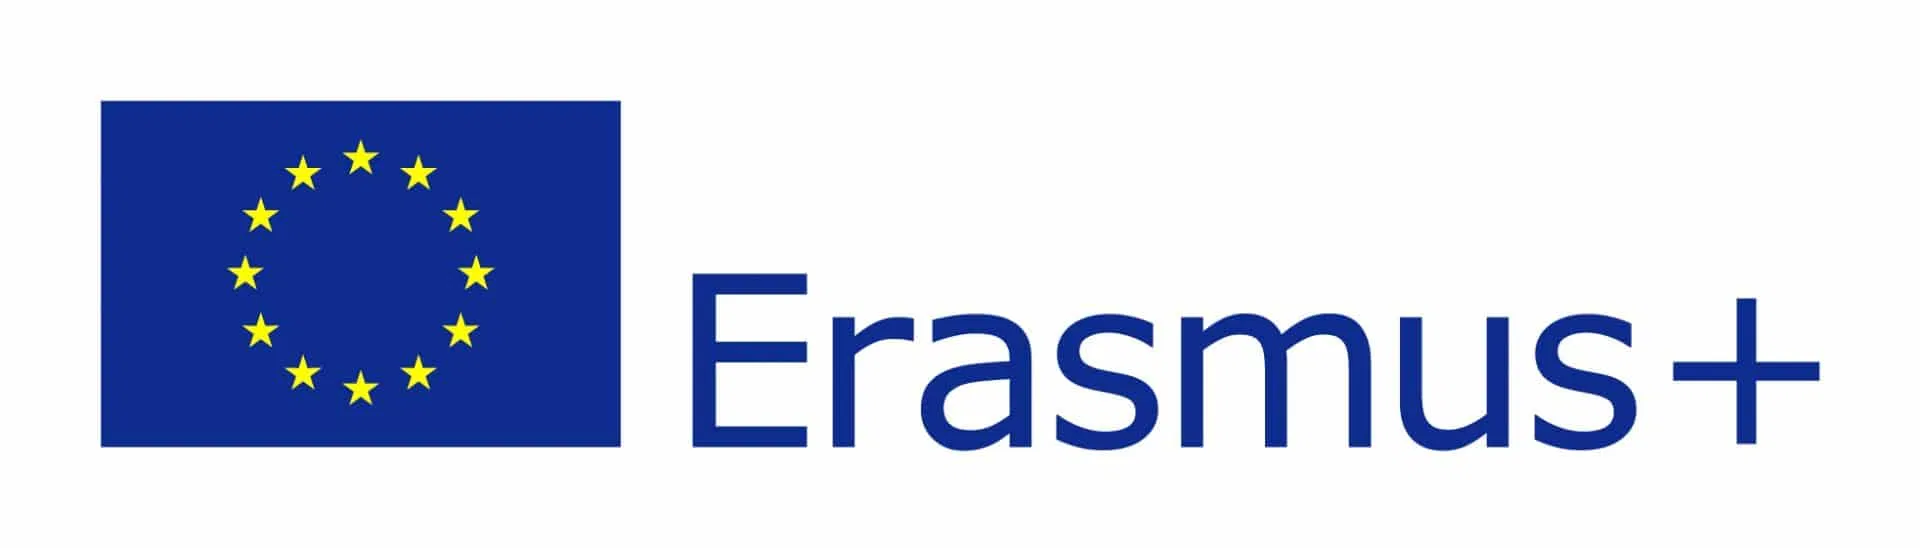 Erasmus-Plus.webp